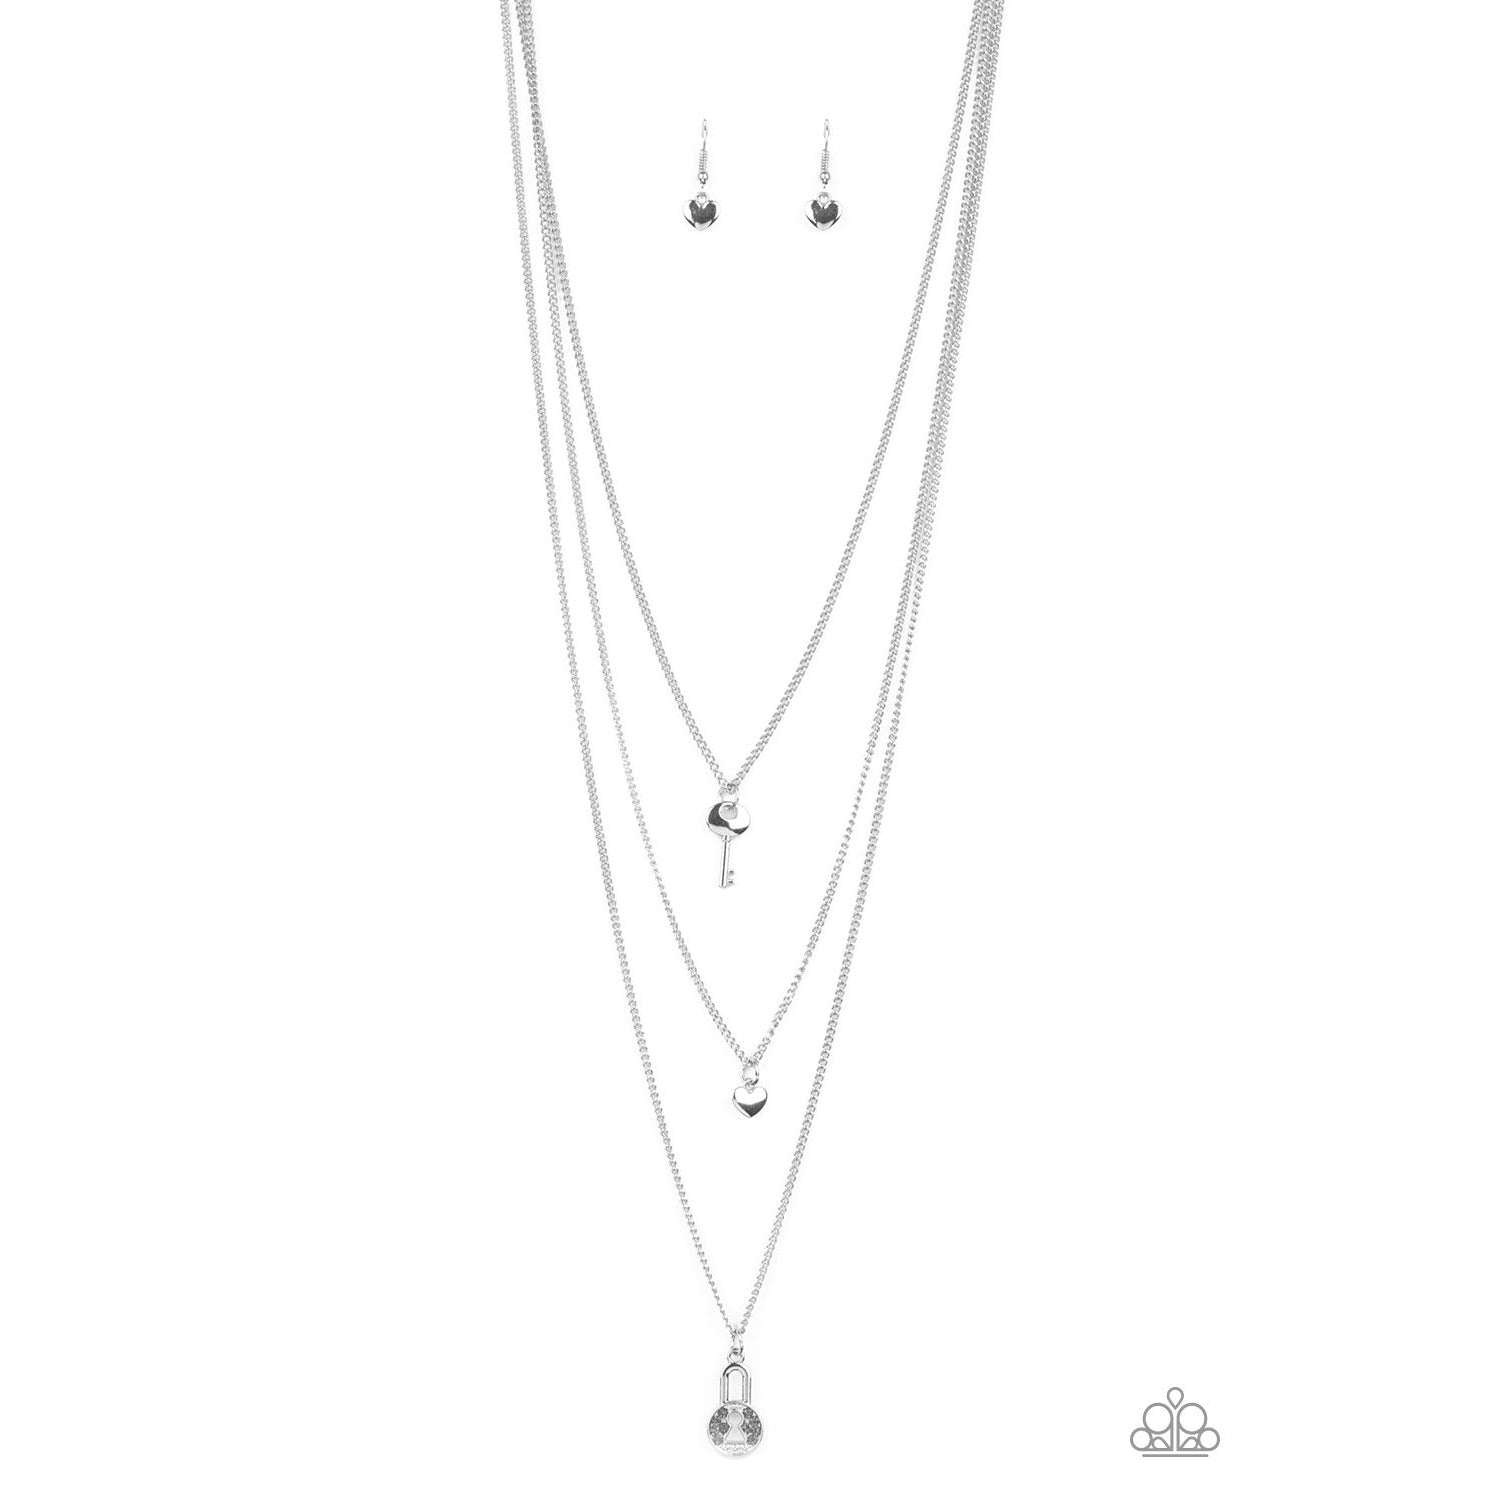 Paparazzi Secret Heart - Silver Necklace & Earrings Set-Necklace-SPARKLE ARMAND